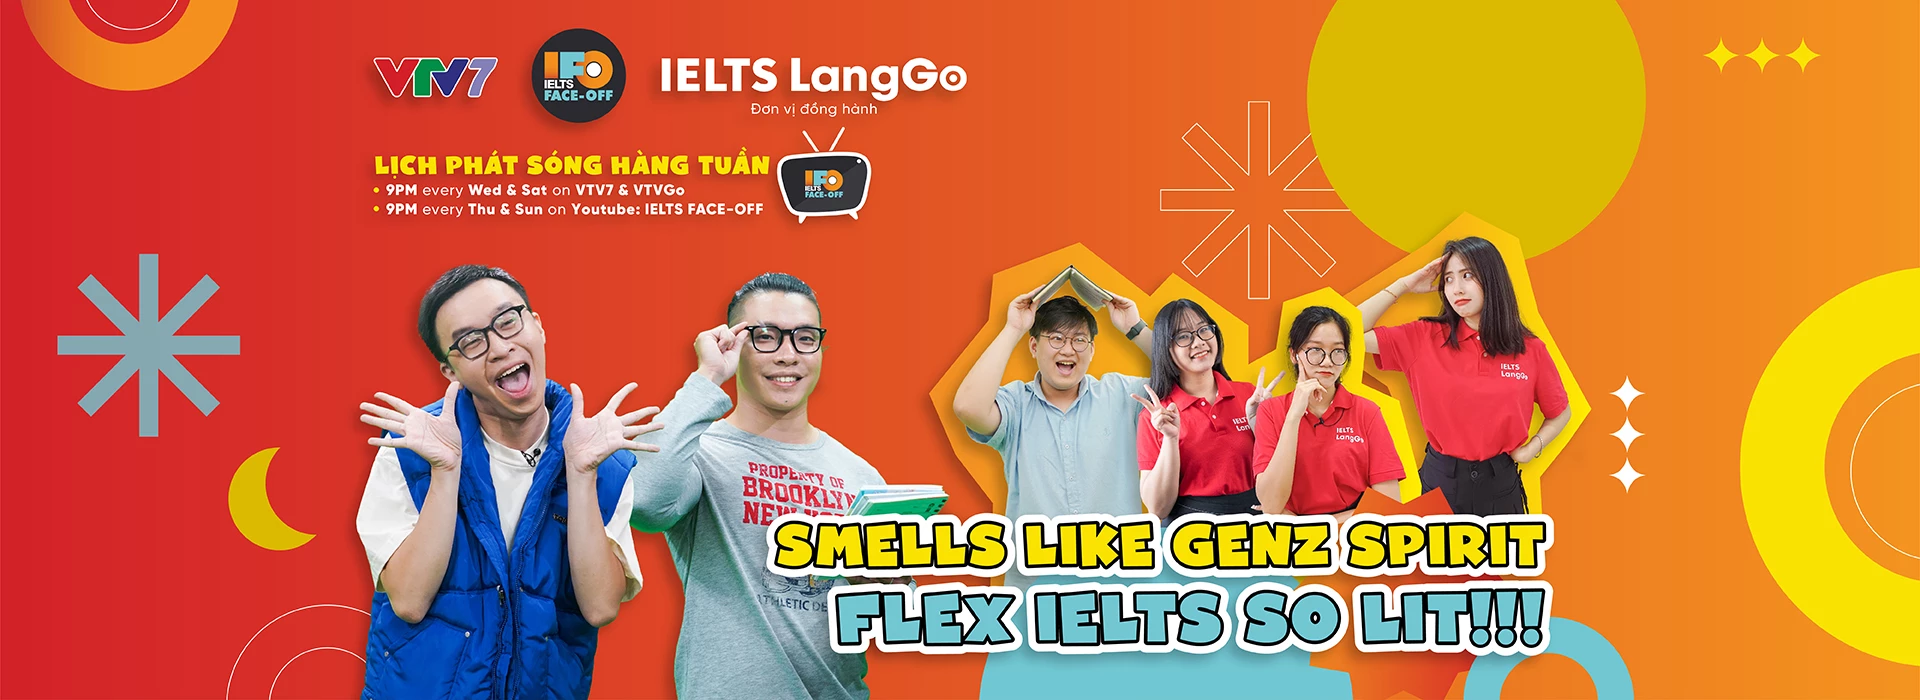 IELTS LangGo x IFO (Banner website)